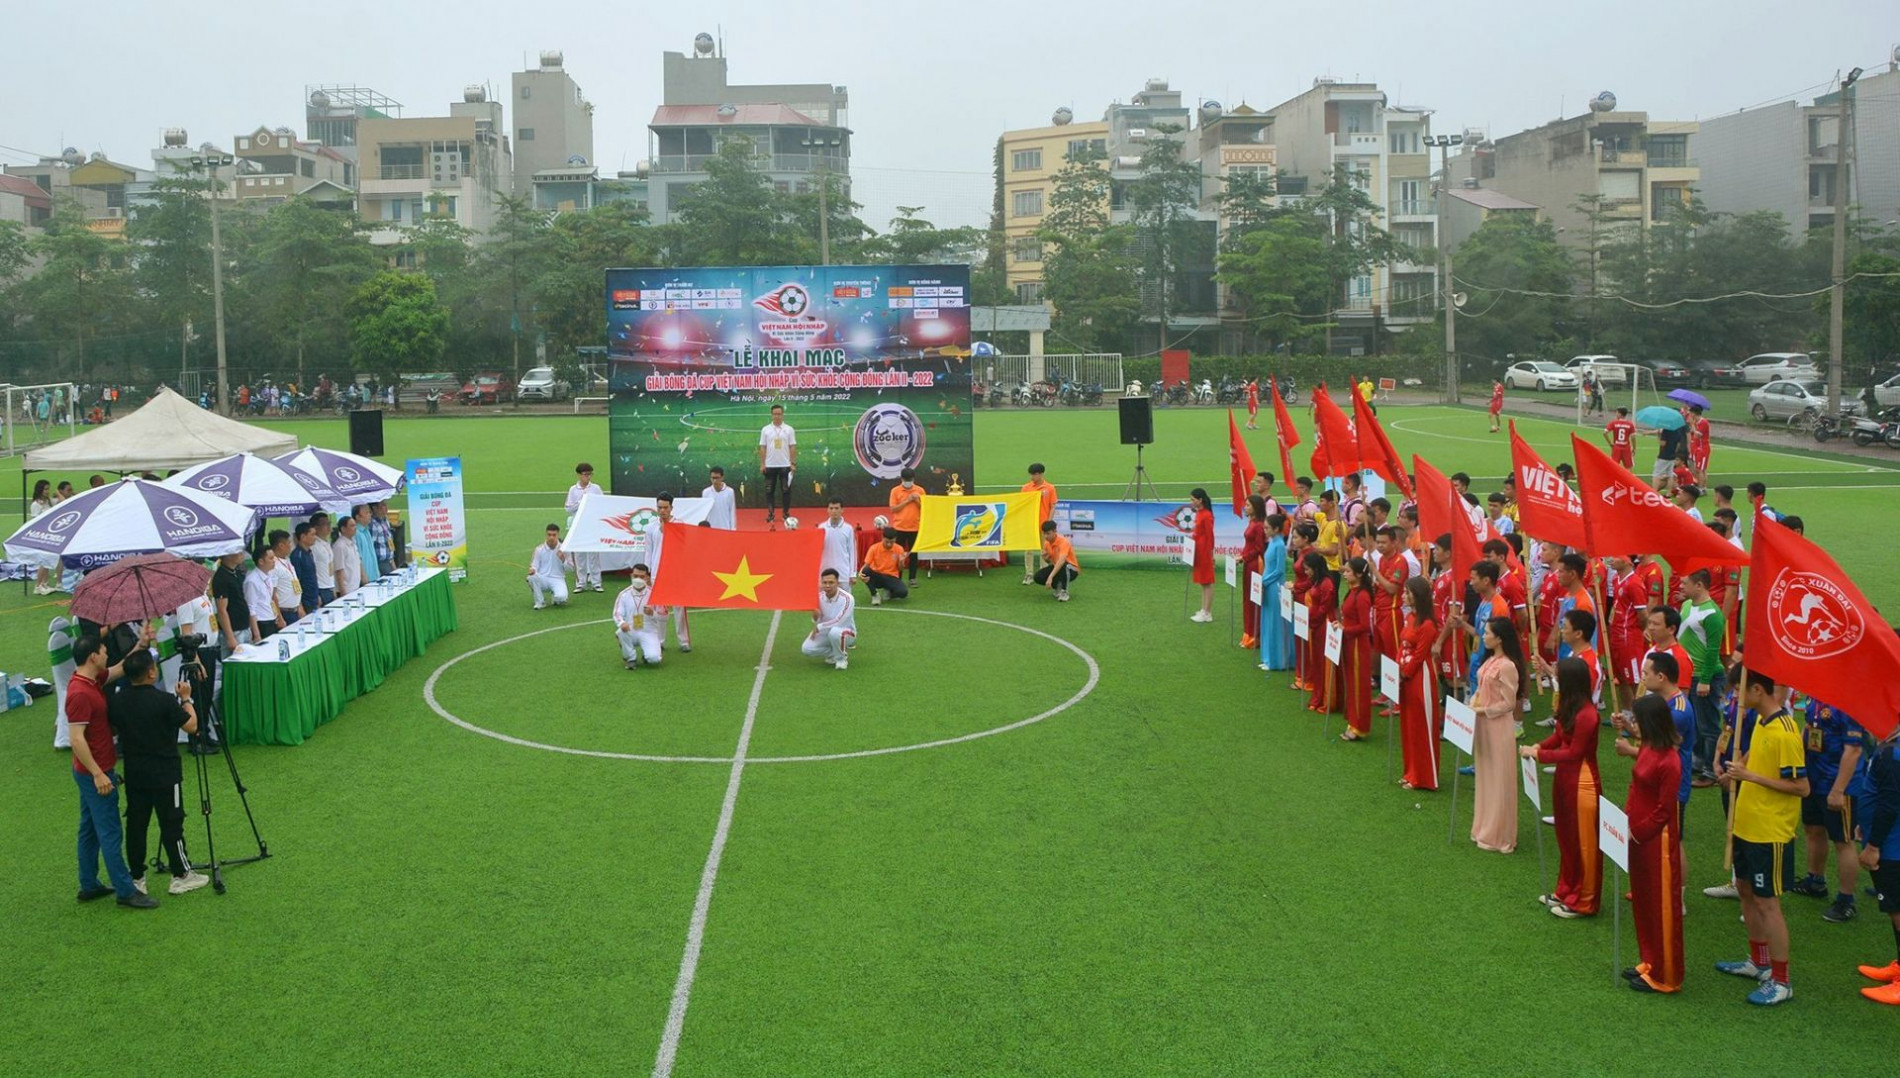 Khai mạc Cup Việt Nam Hội nhập Vì sức khỏe cộng đồng lần II - 2022